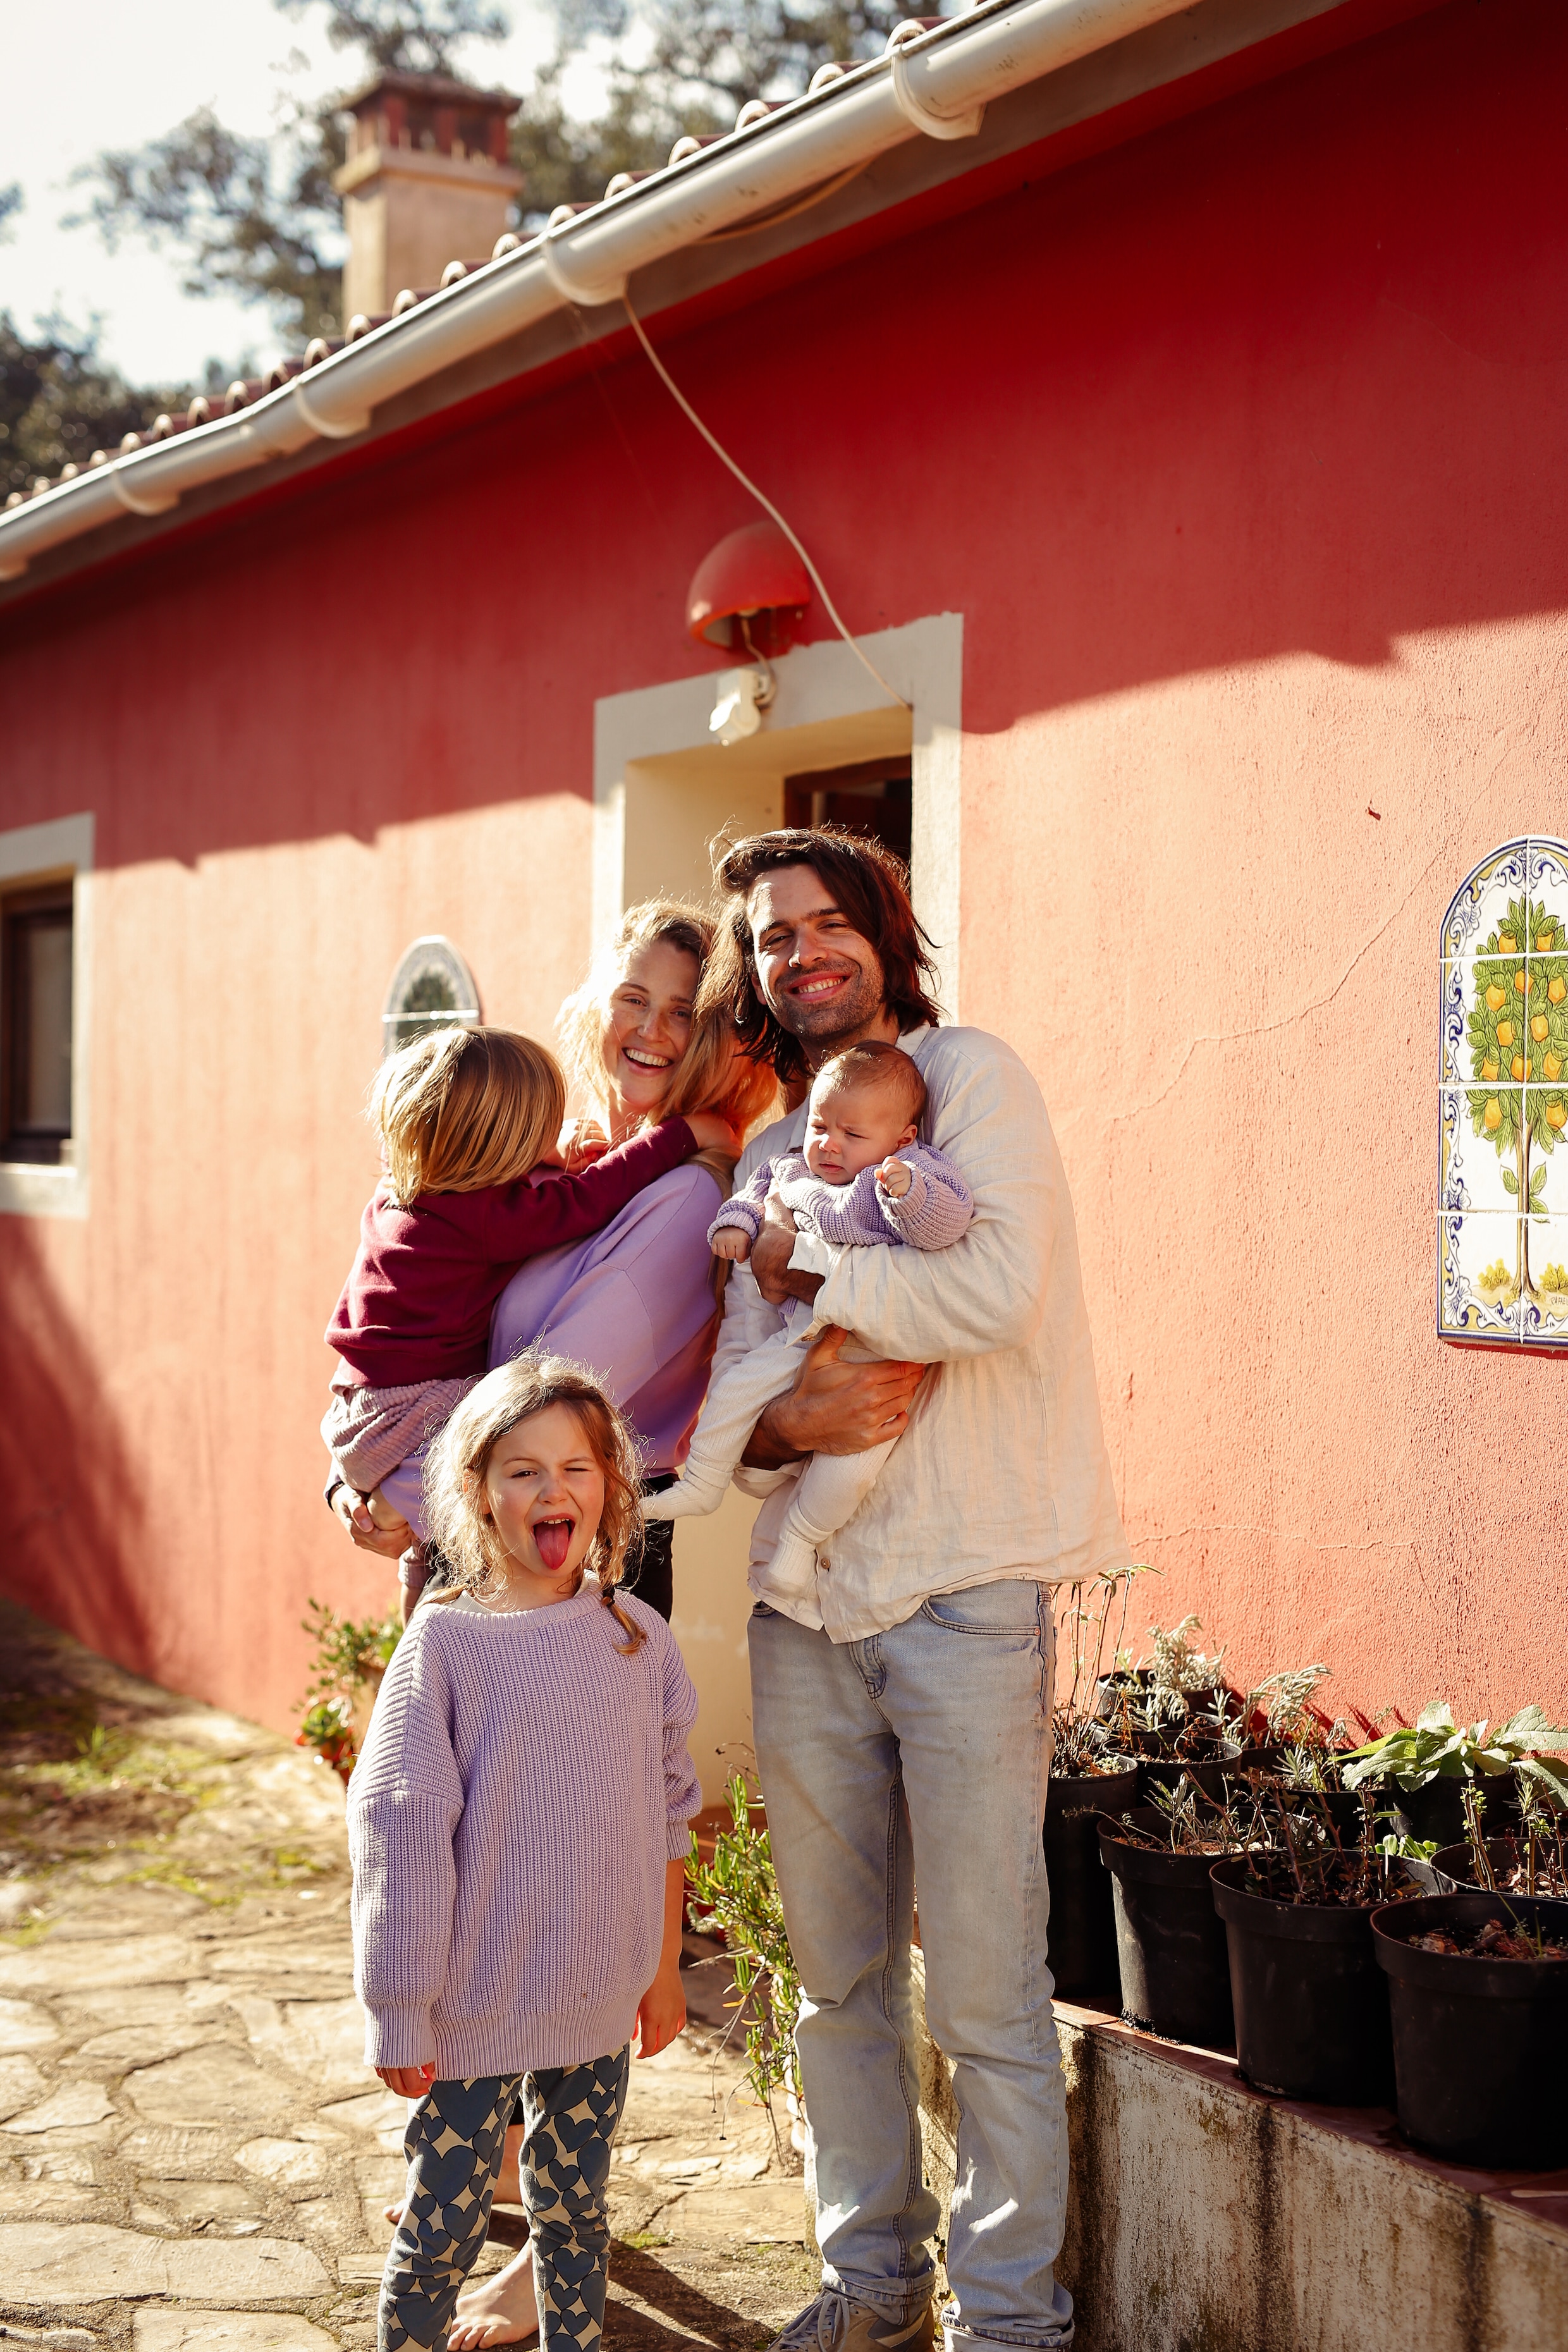 Elisabeth Van Lierop, Tijs Delbeke en hun kinderen spenderen de winters graag in warmere oorden